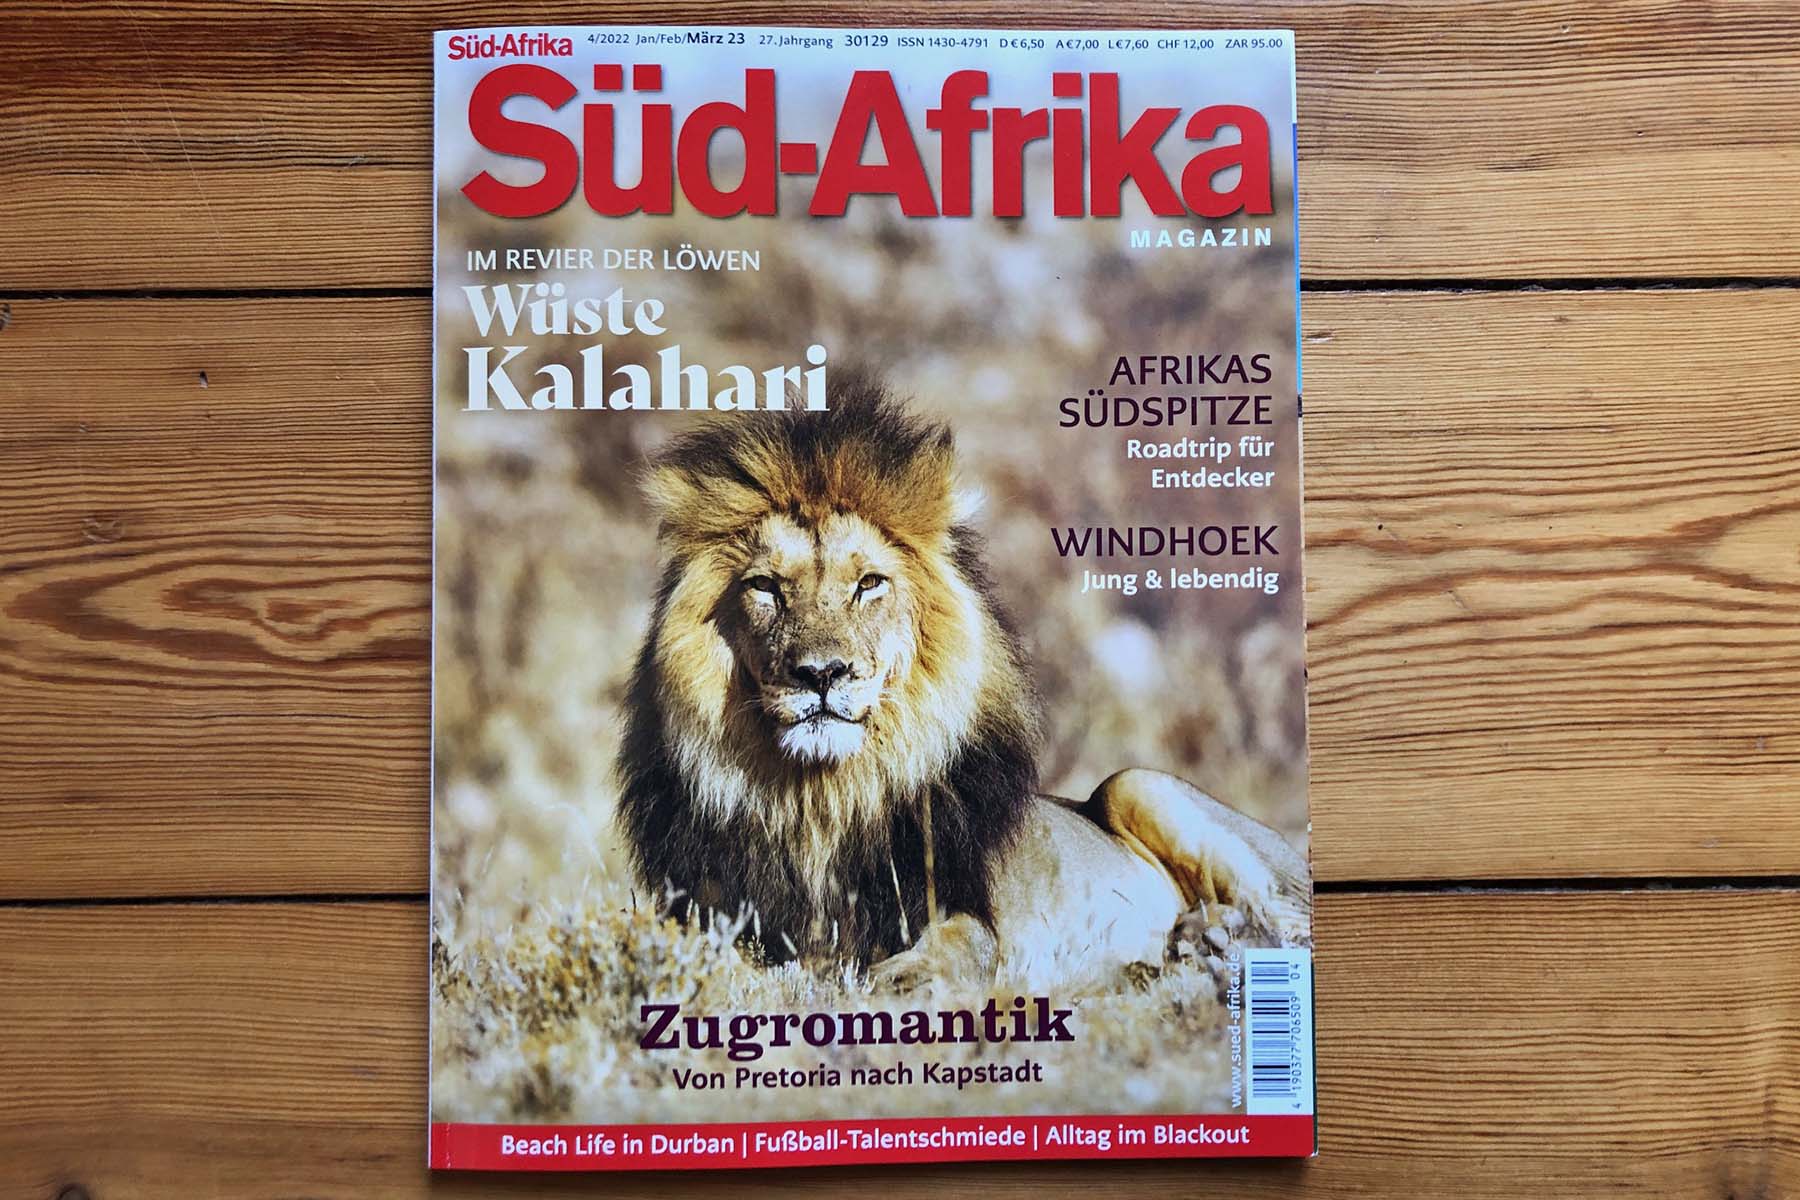 Coverfoto Südafrika mit einem Löwen